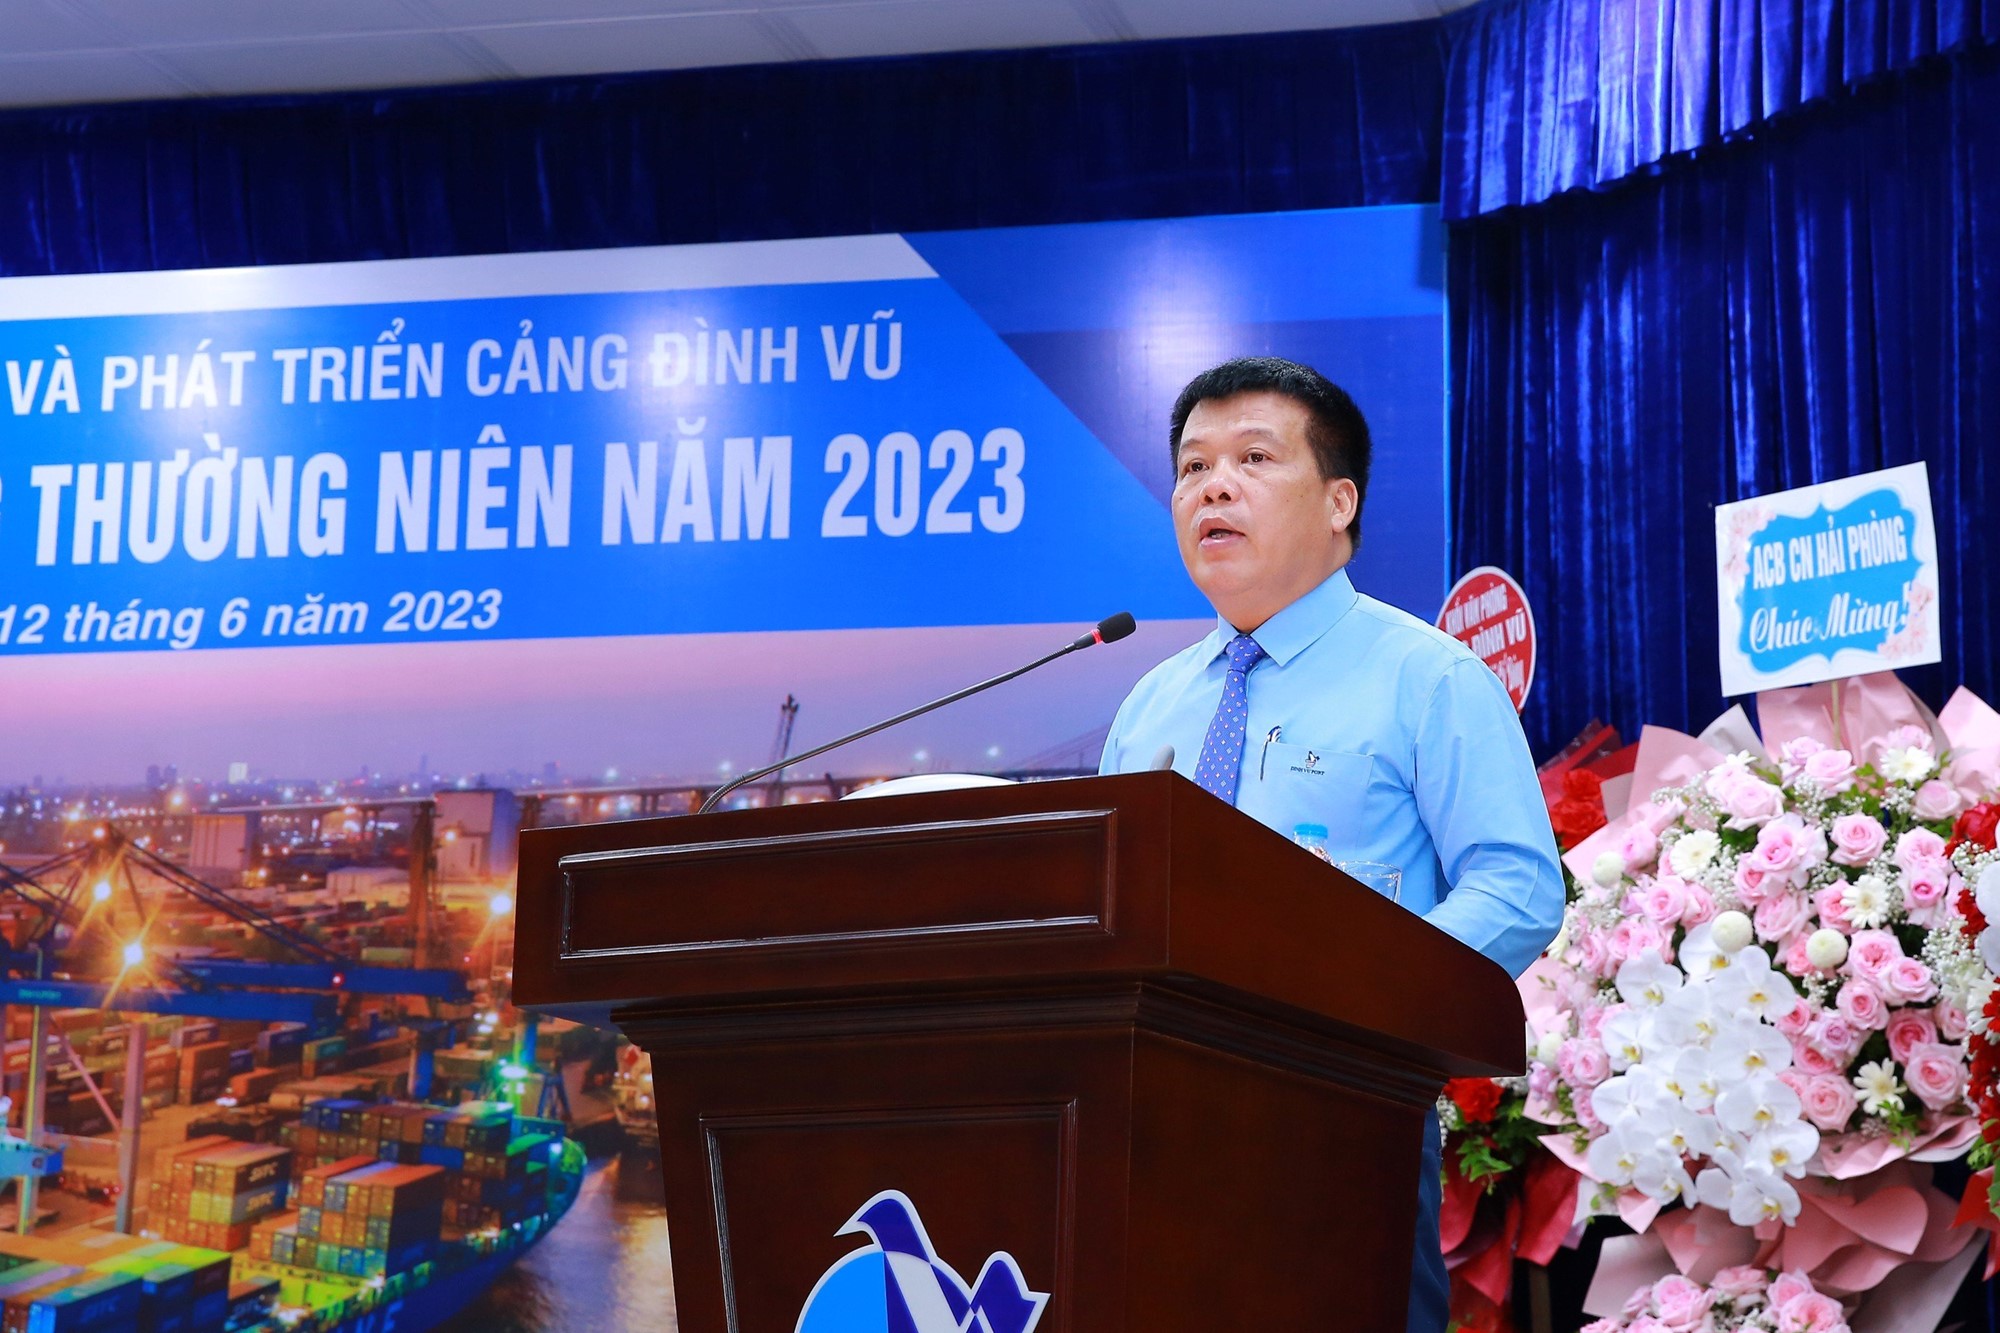 Ông Cao Văn Tĩnh thay mặt Đoàn chủ tịch trình bày Báo cáo của HĐQT về kết quả SXKD 2022, nhiệm kỳ 2018-2023 và kế hoạch năm 2023